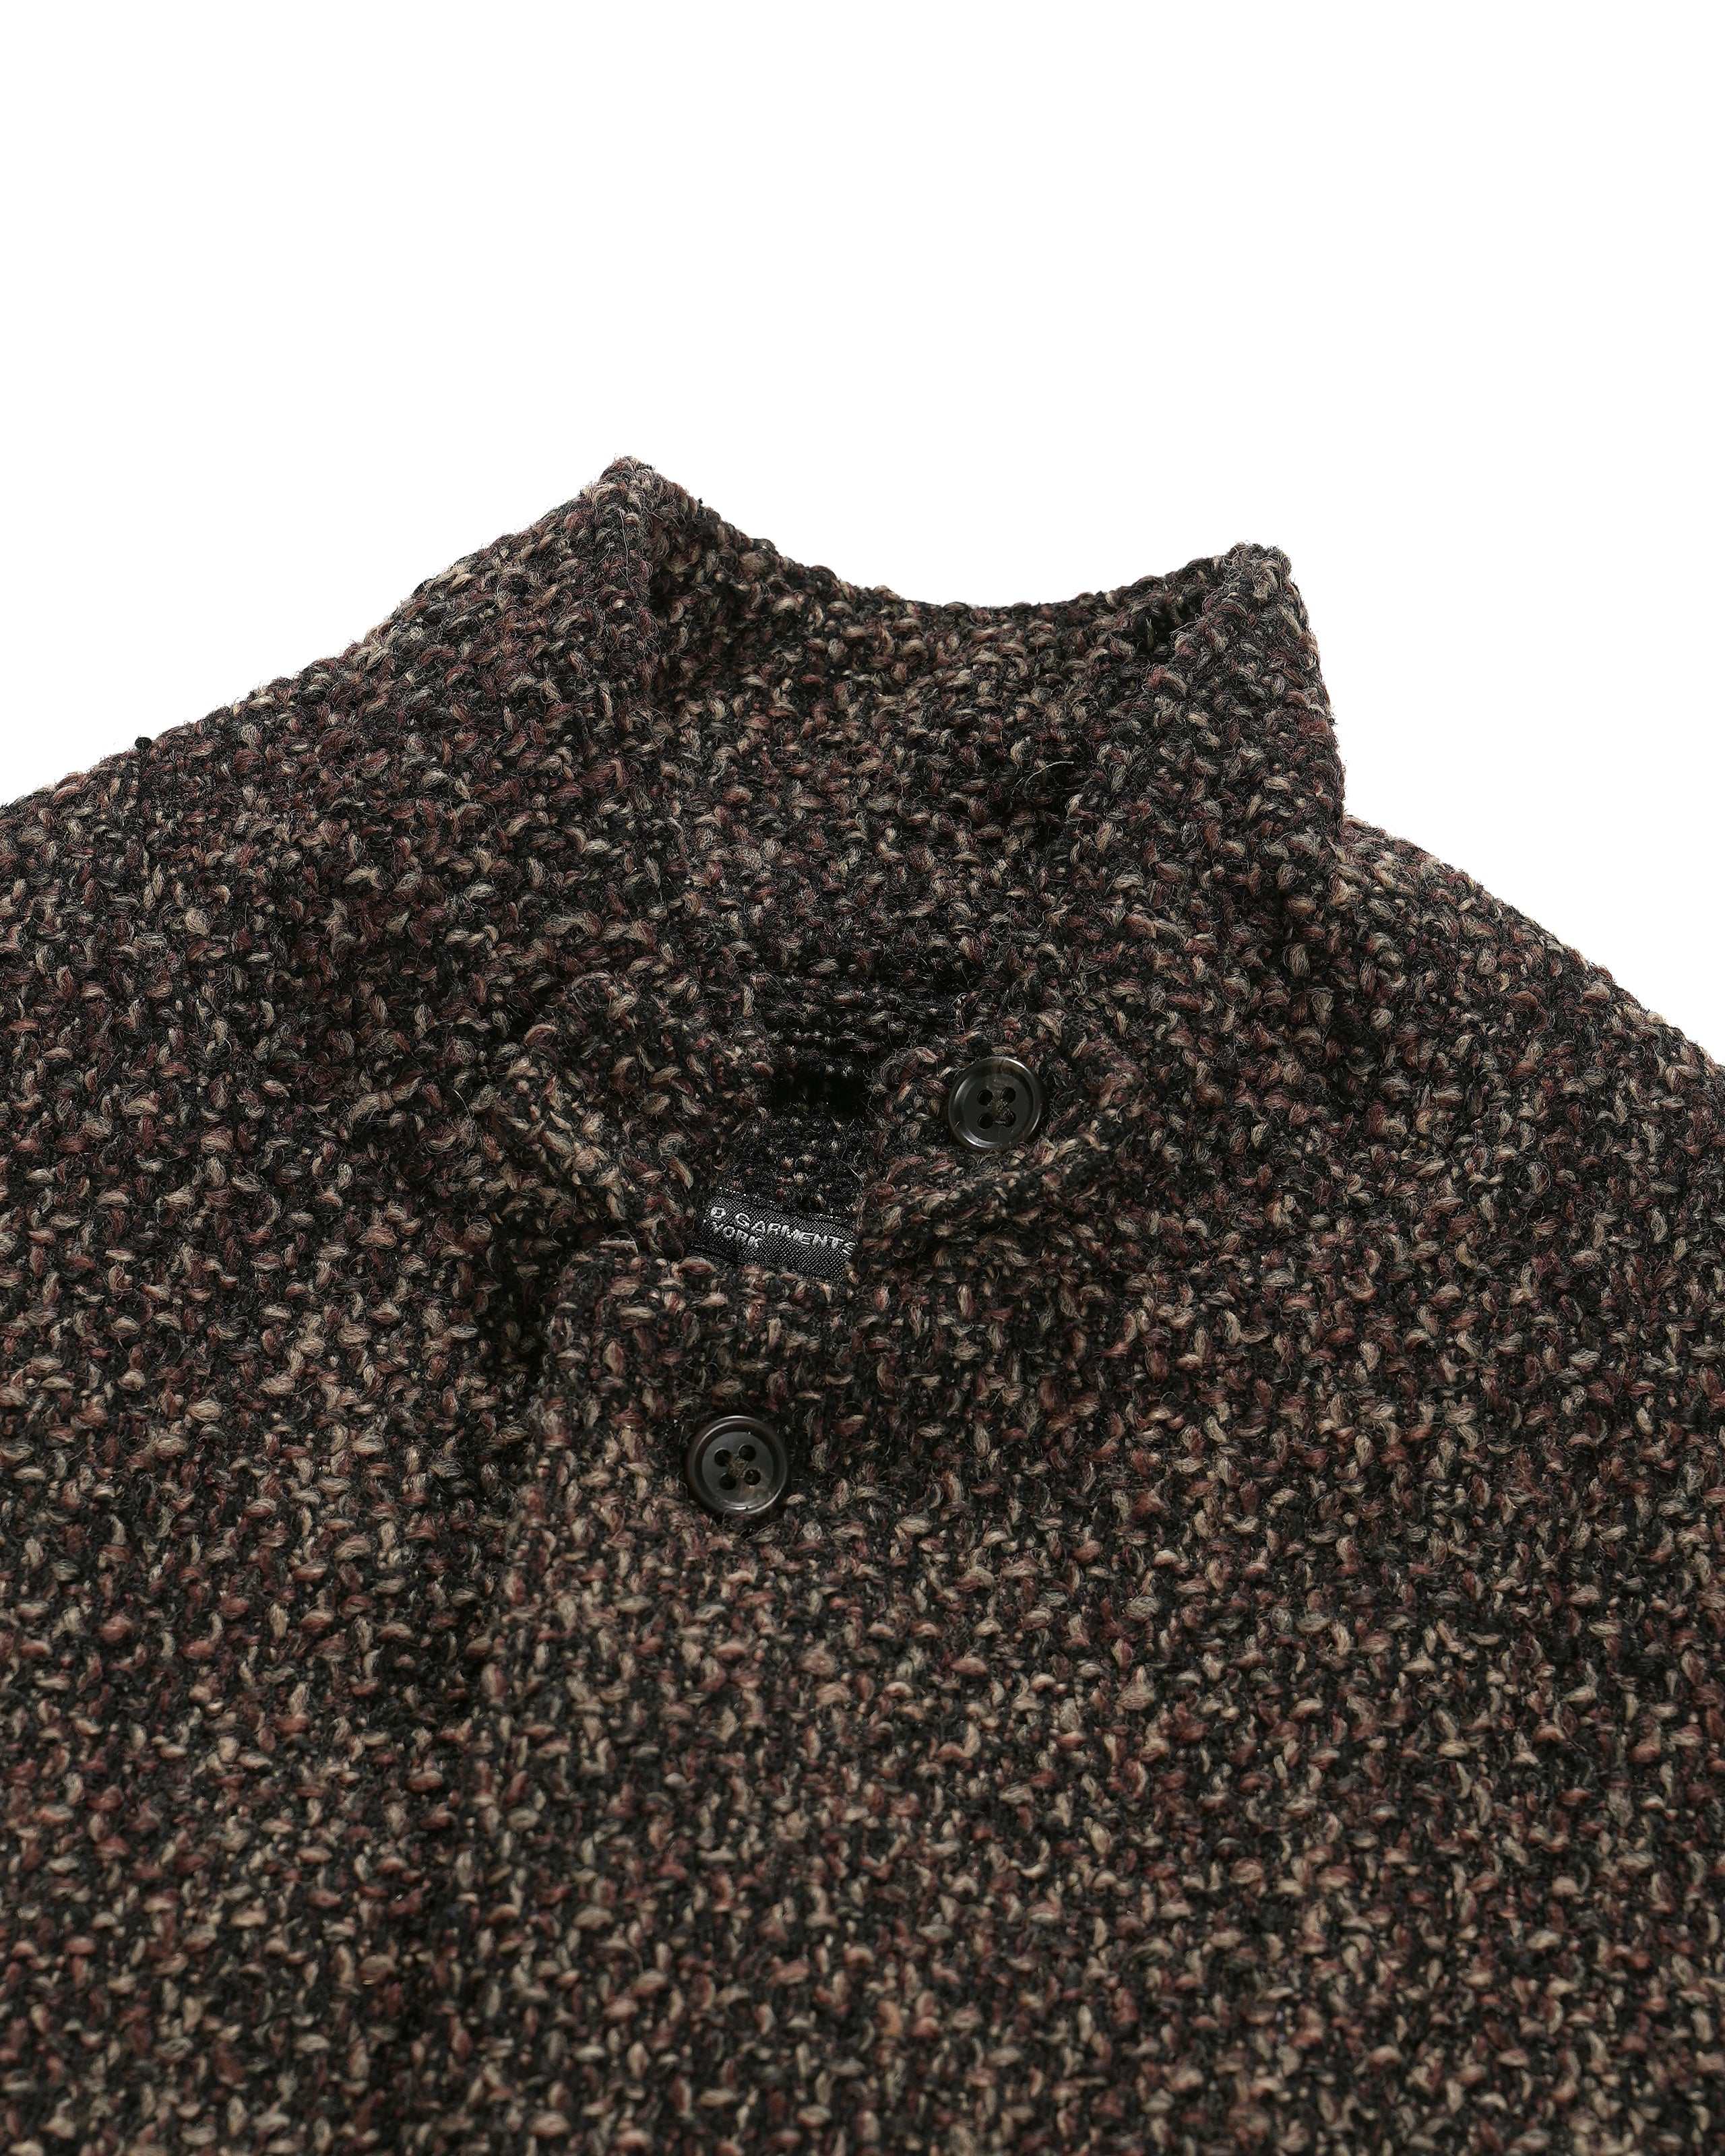 Loiter Jacket - Dk. Brown Polyester Wool Tweed Boucle